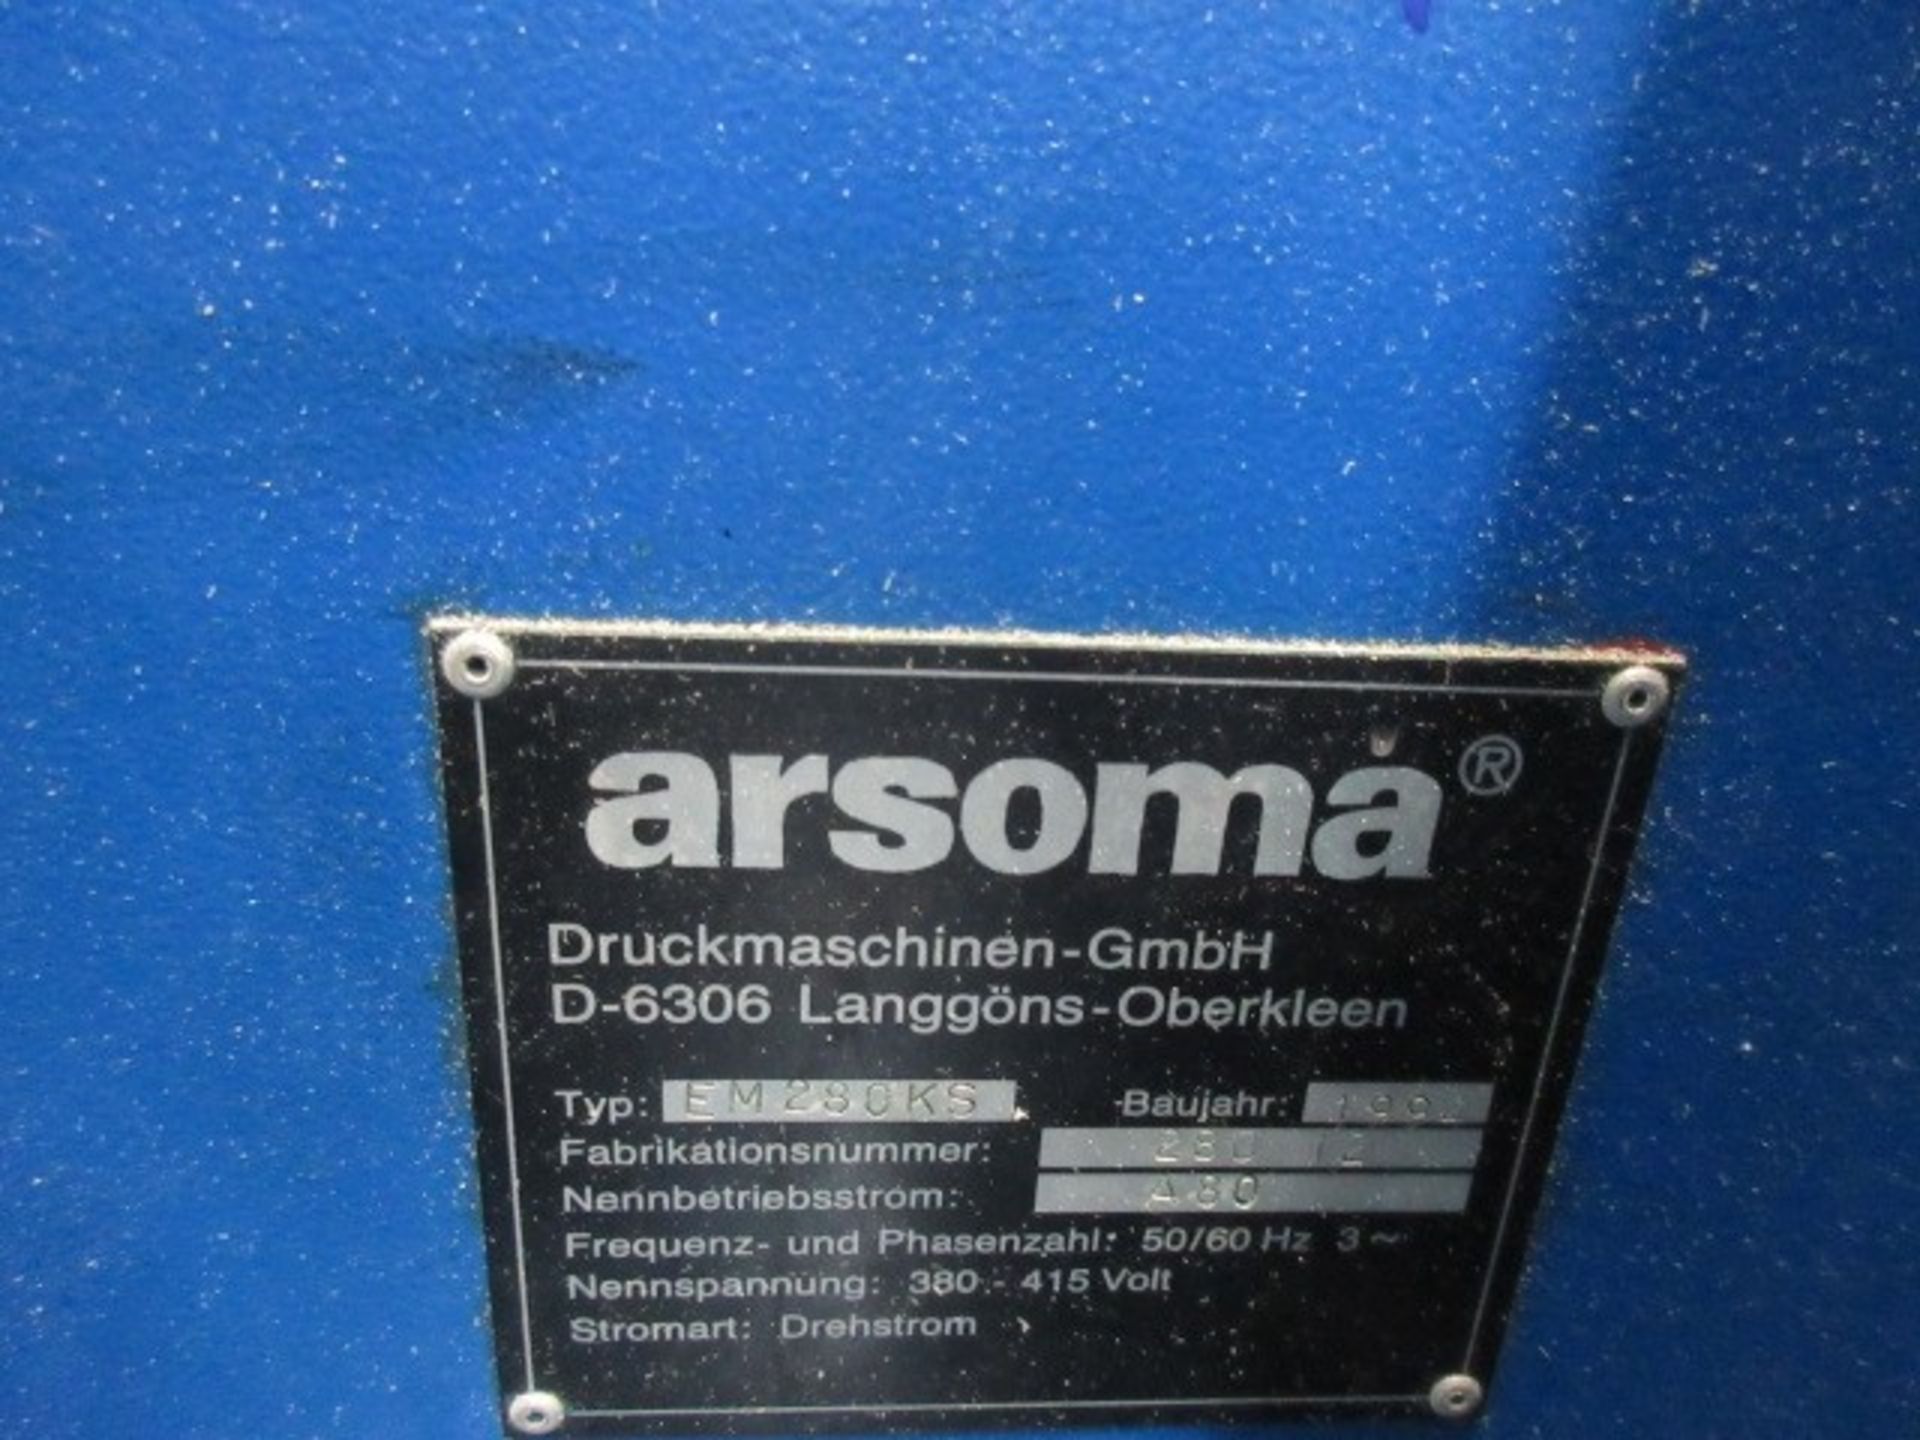 Arsoma type EM280KS 6 colour flexographic press, Serial no: 28012 (1994) - Image 11 of 12